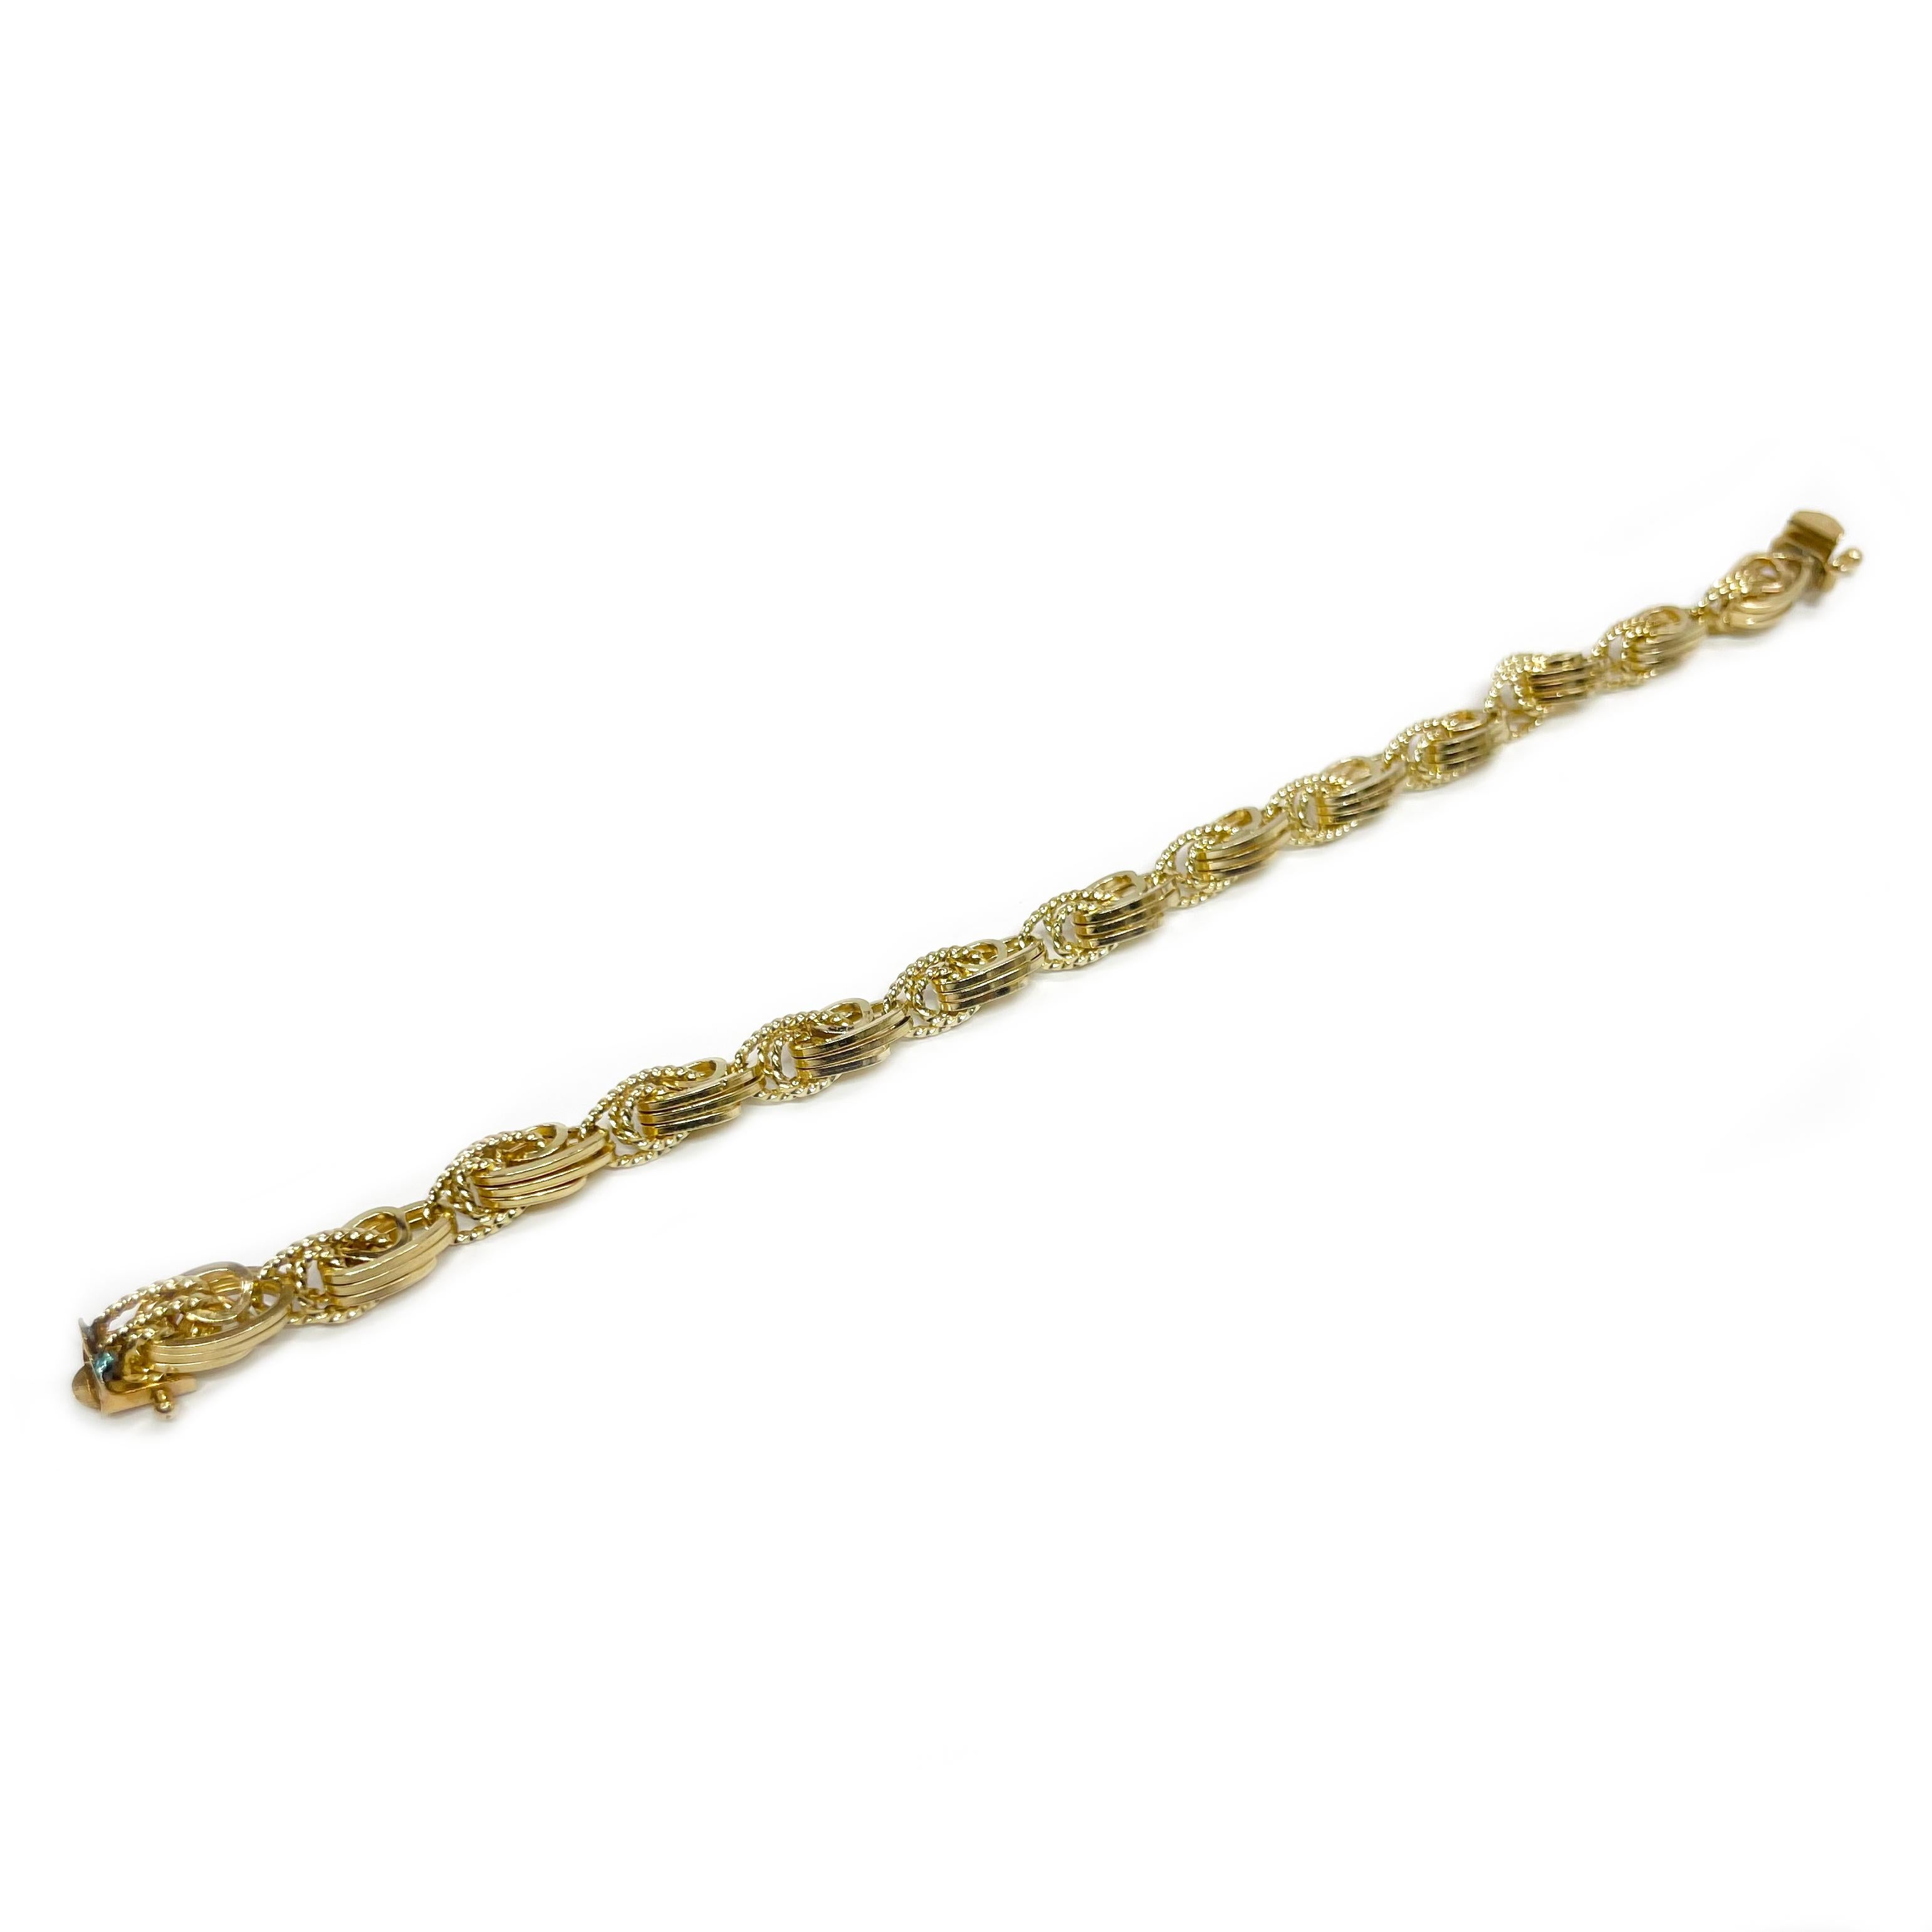 Bracelet à trois maillons en or jaune 14 carats. Le bracelet présente des maillons triples en or jaune, à la fois texturés et lisses. Le bracelet mesure 0,25